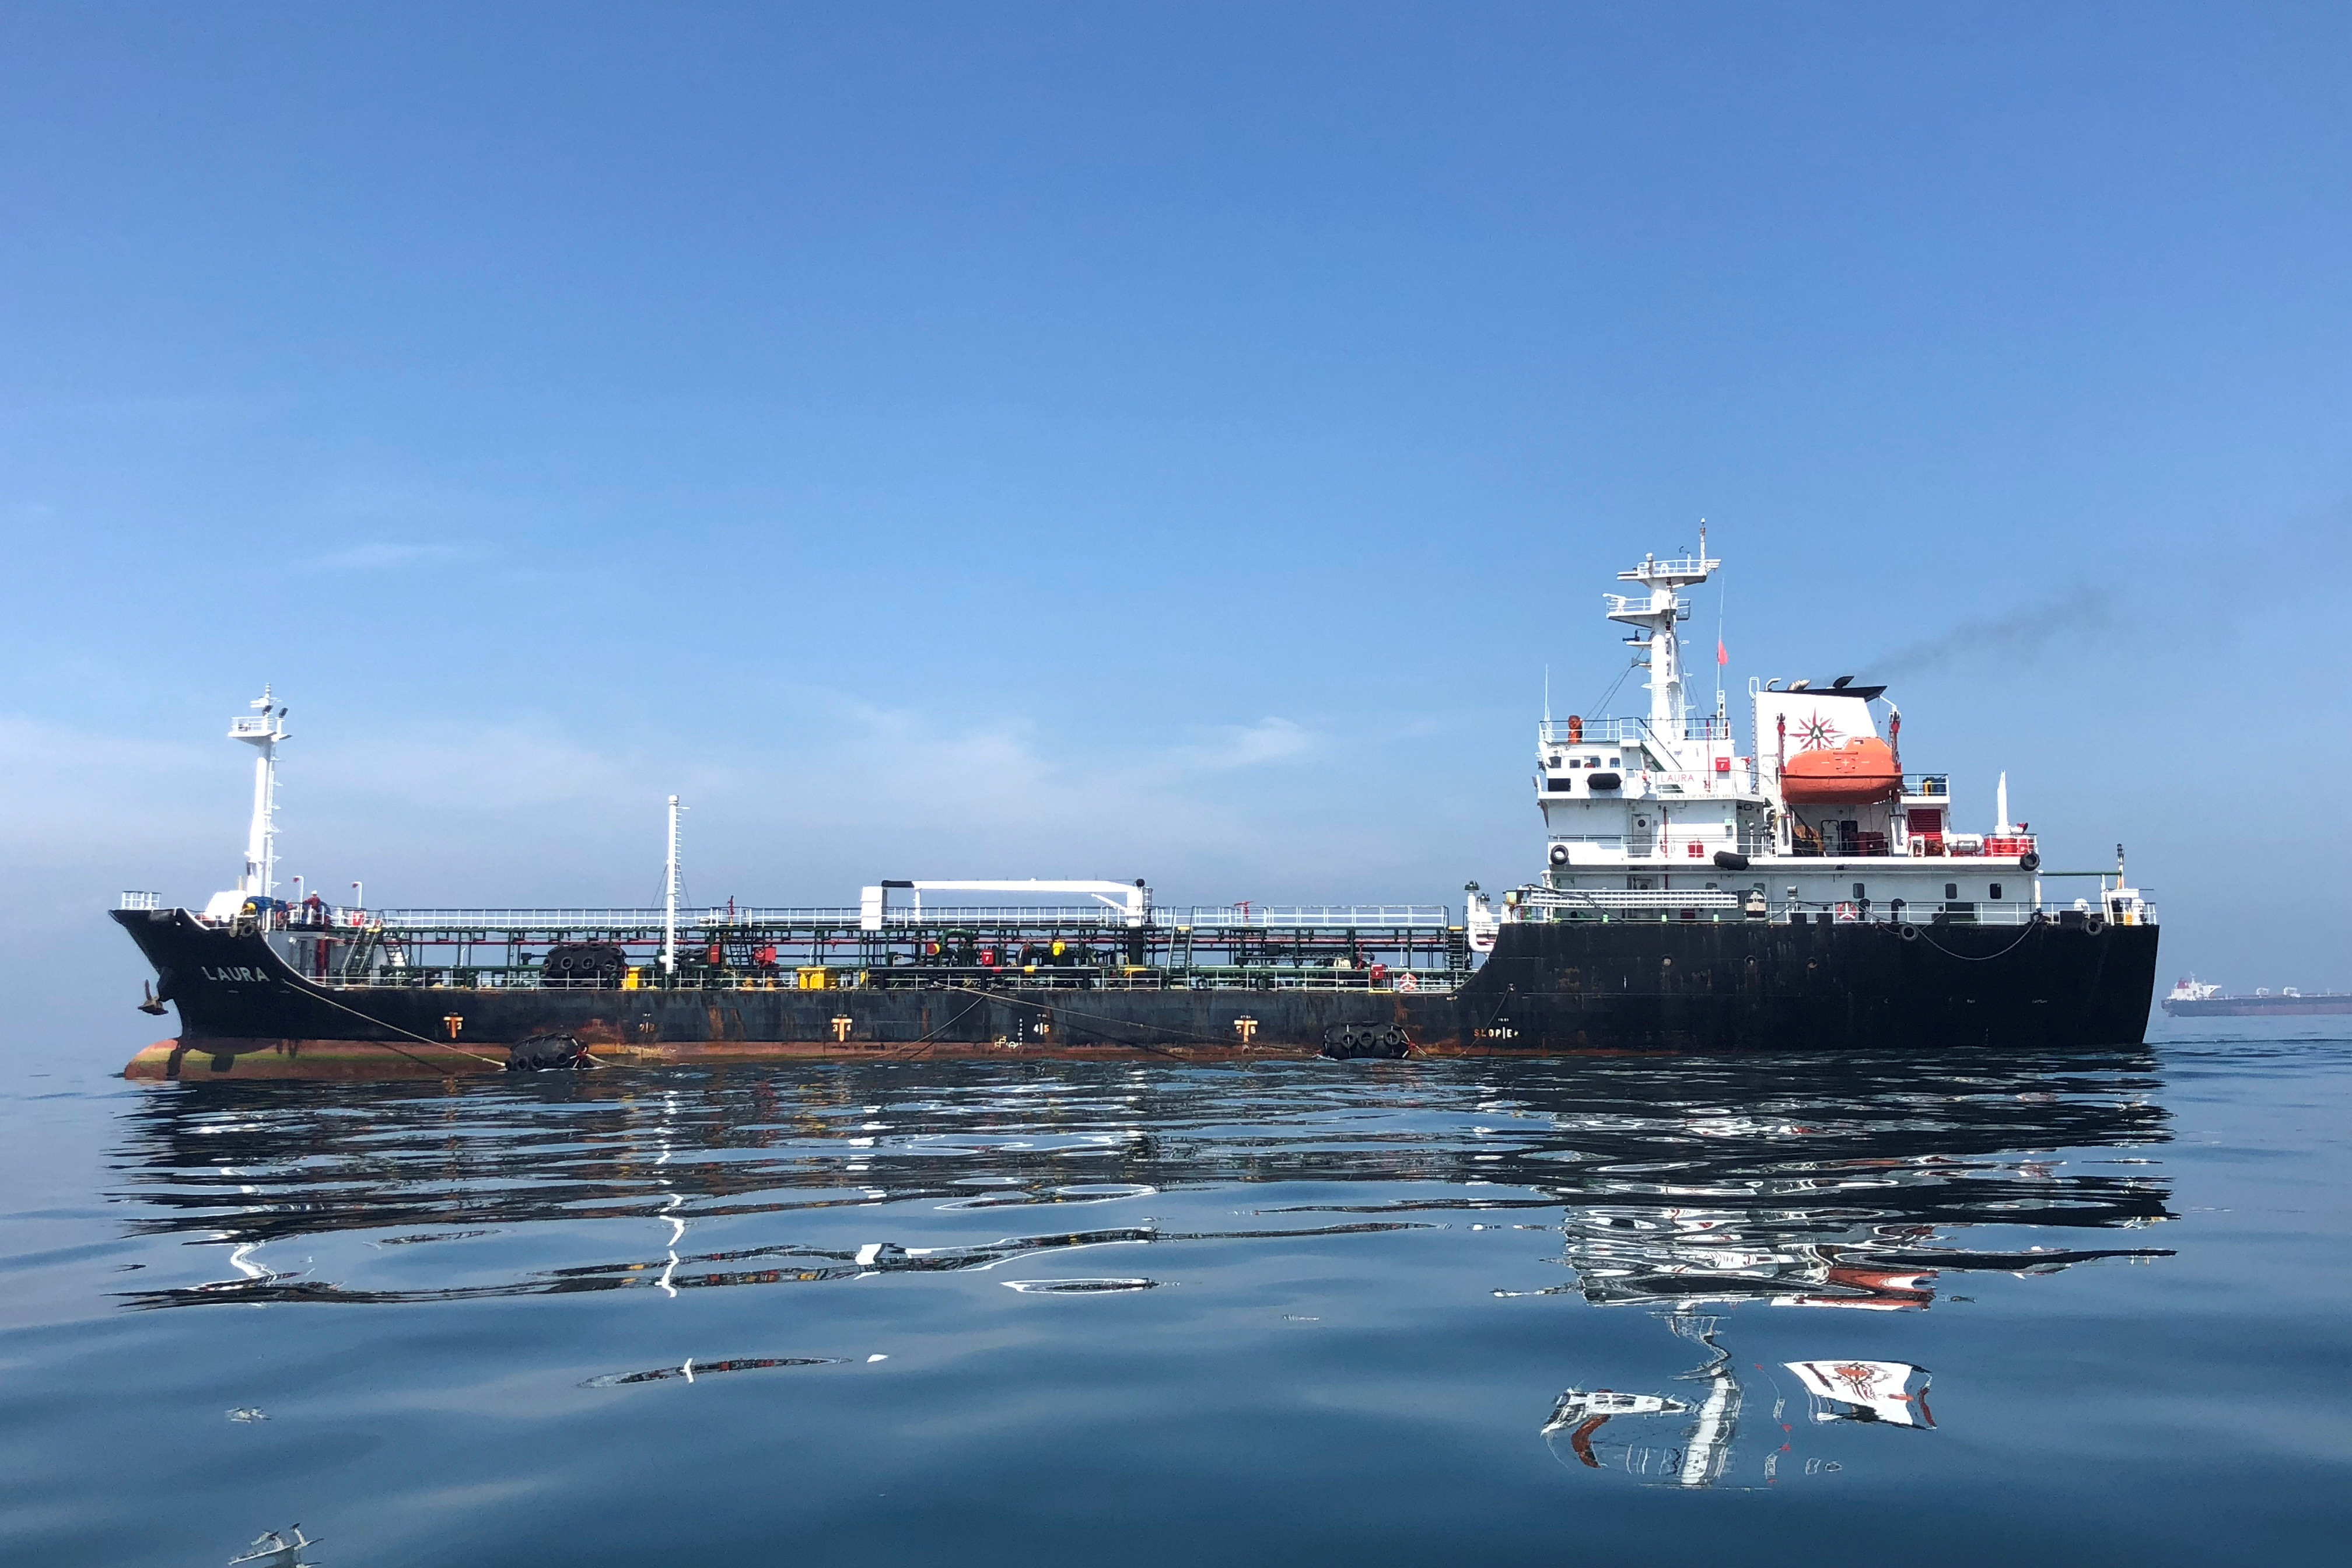 An oil tanker is seen in the sea outside the Puerto La Cruz oil refinery in Puerto La Cruz, Venezuela July 19, 2018. REUTERS/Alexandra Ulmer